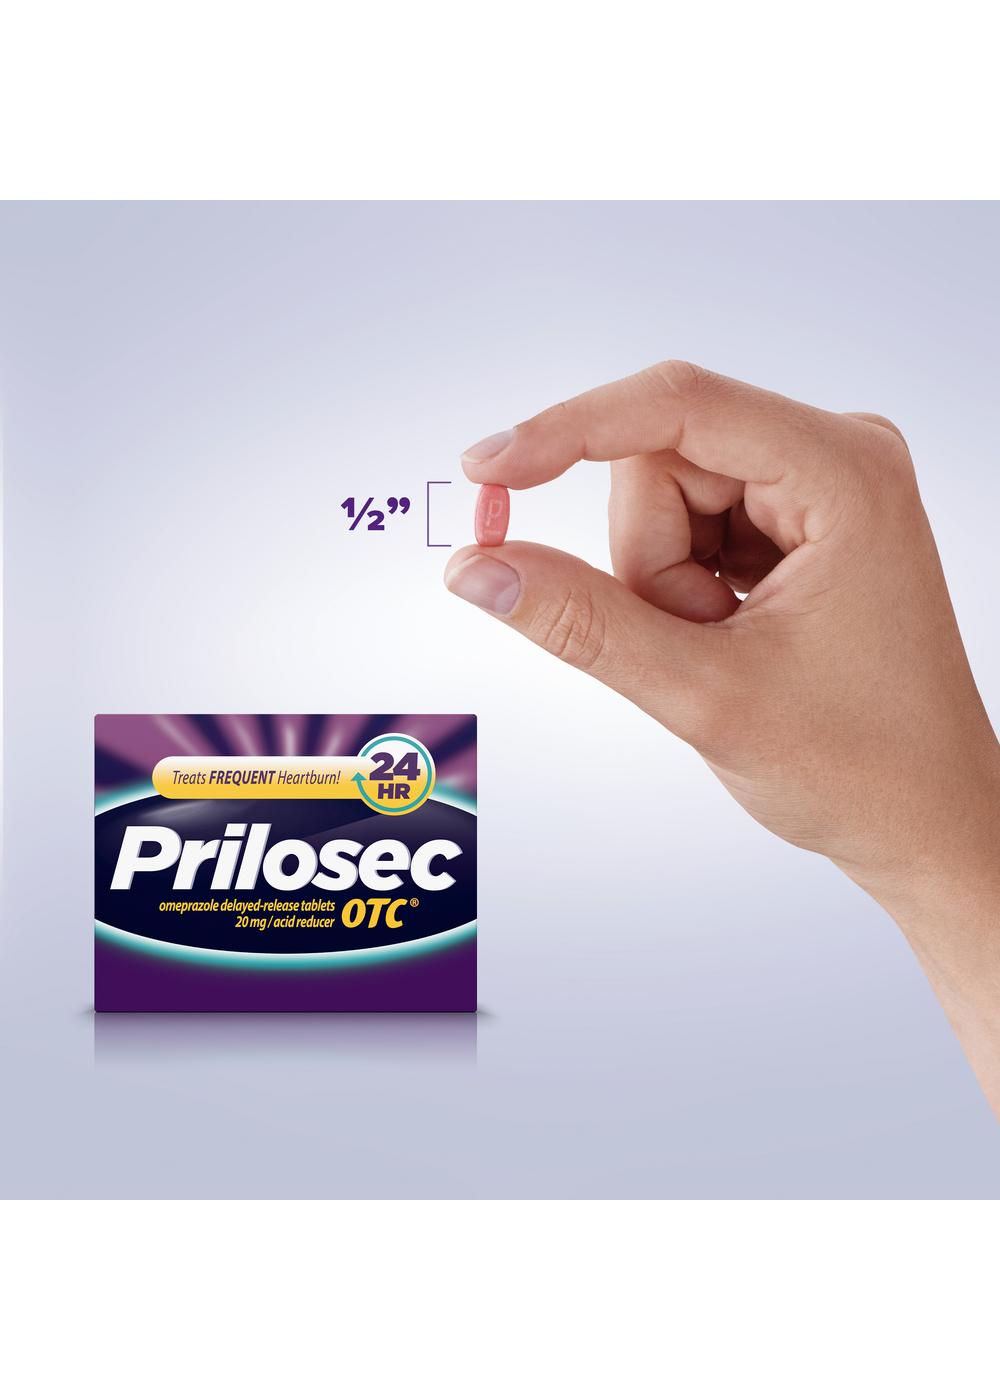 Prilosec Omeprazole Delayed Release Acid Reducer Tablets; image 3 of 9